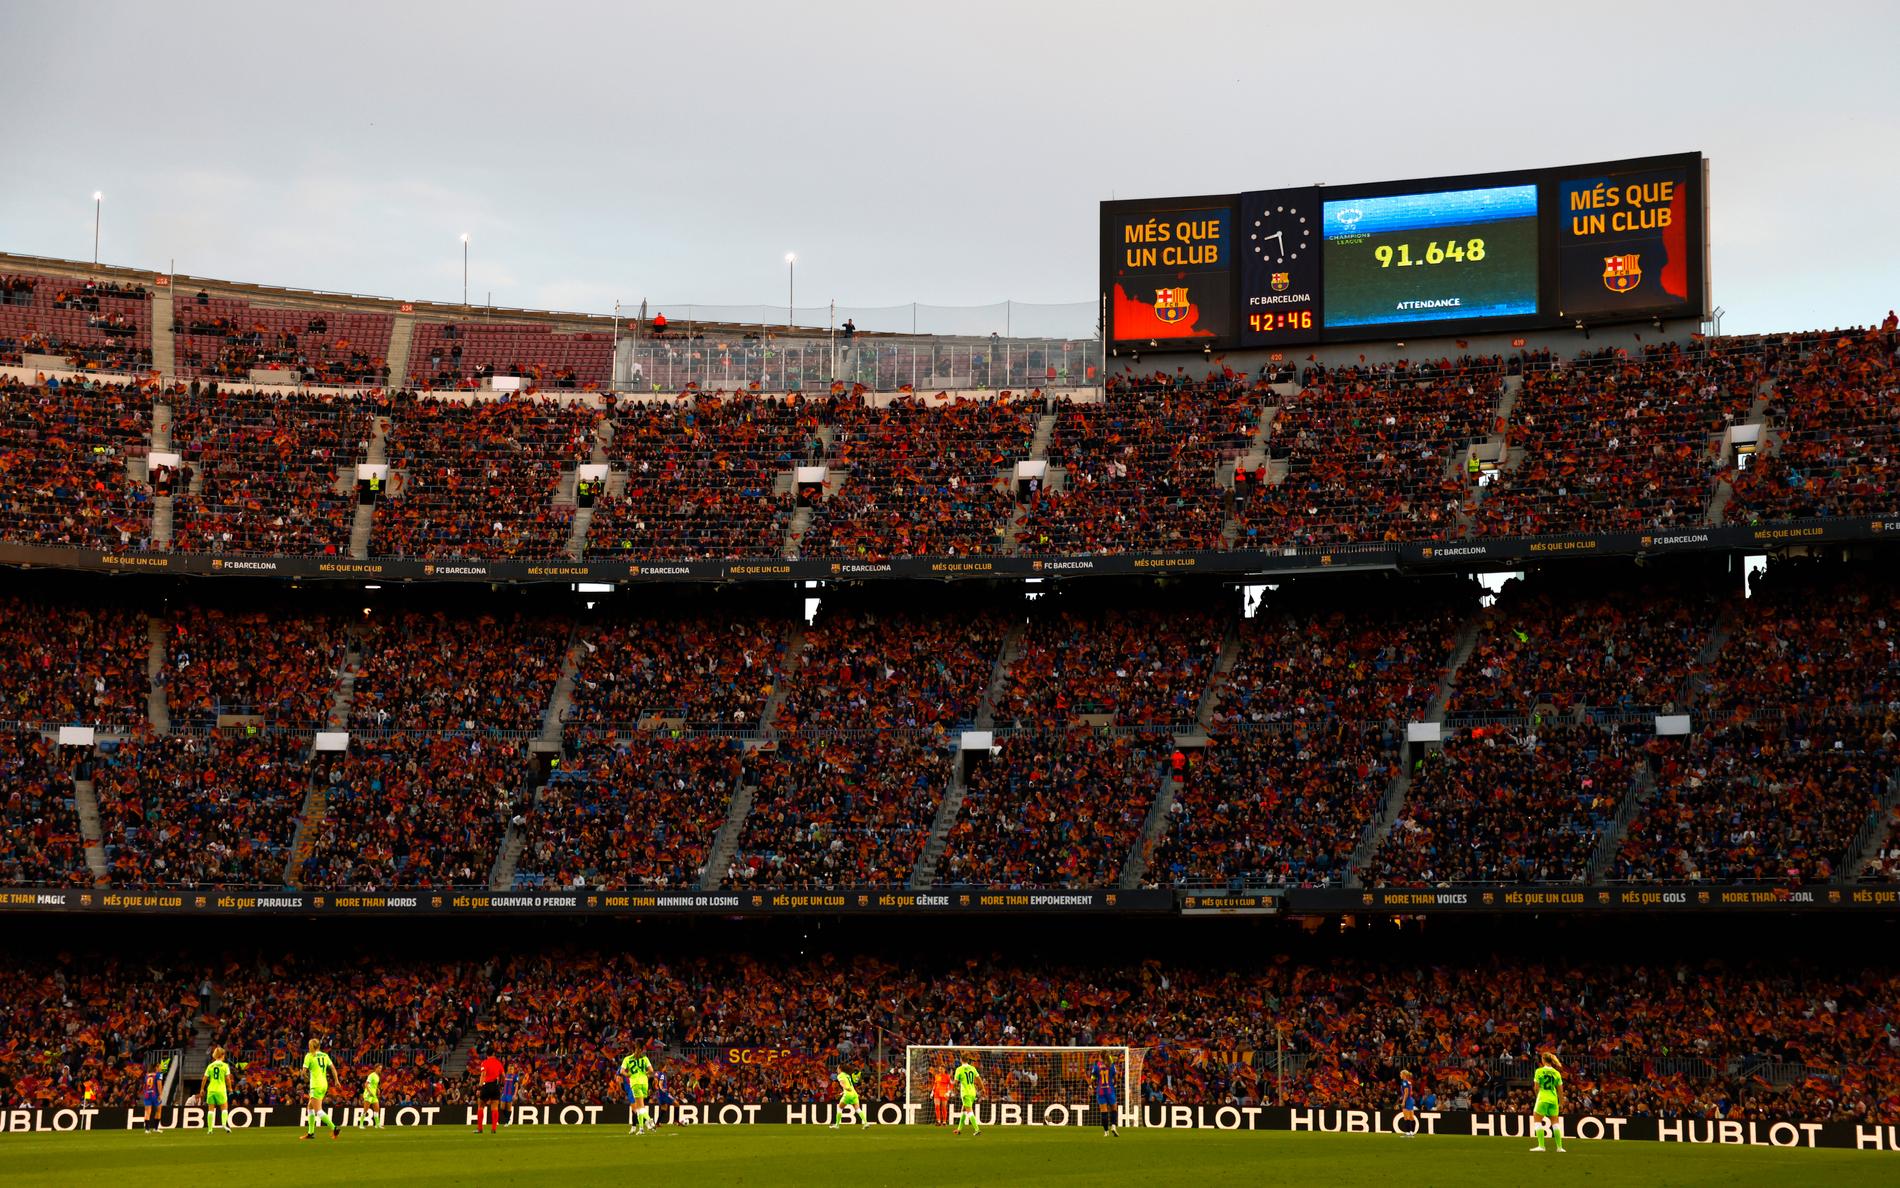 Nästan 92 000 åskådare såg matchen mellan Barcelona och Wolfsburg i april.